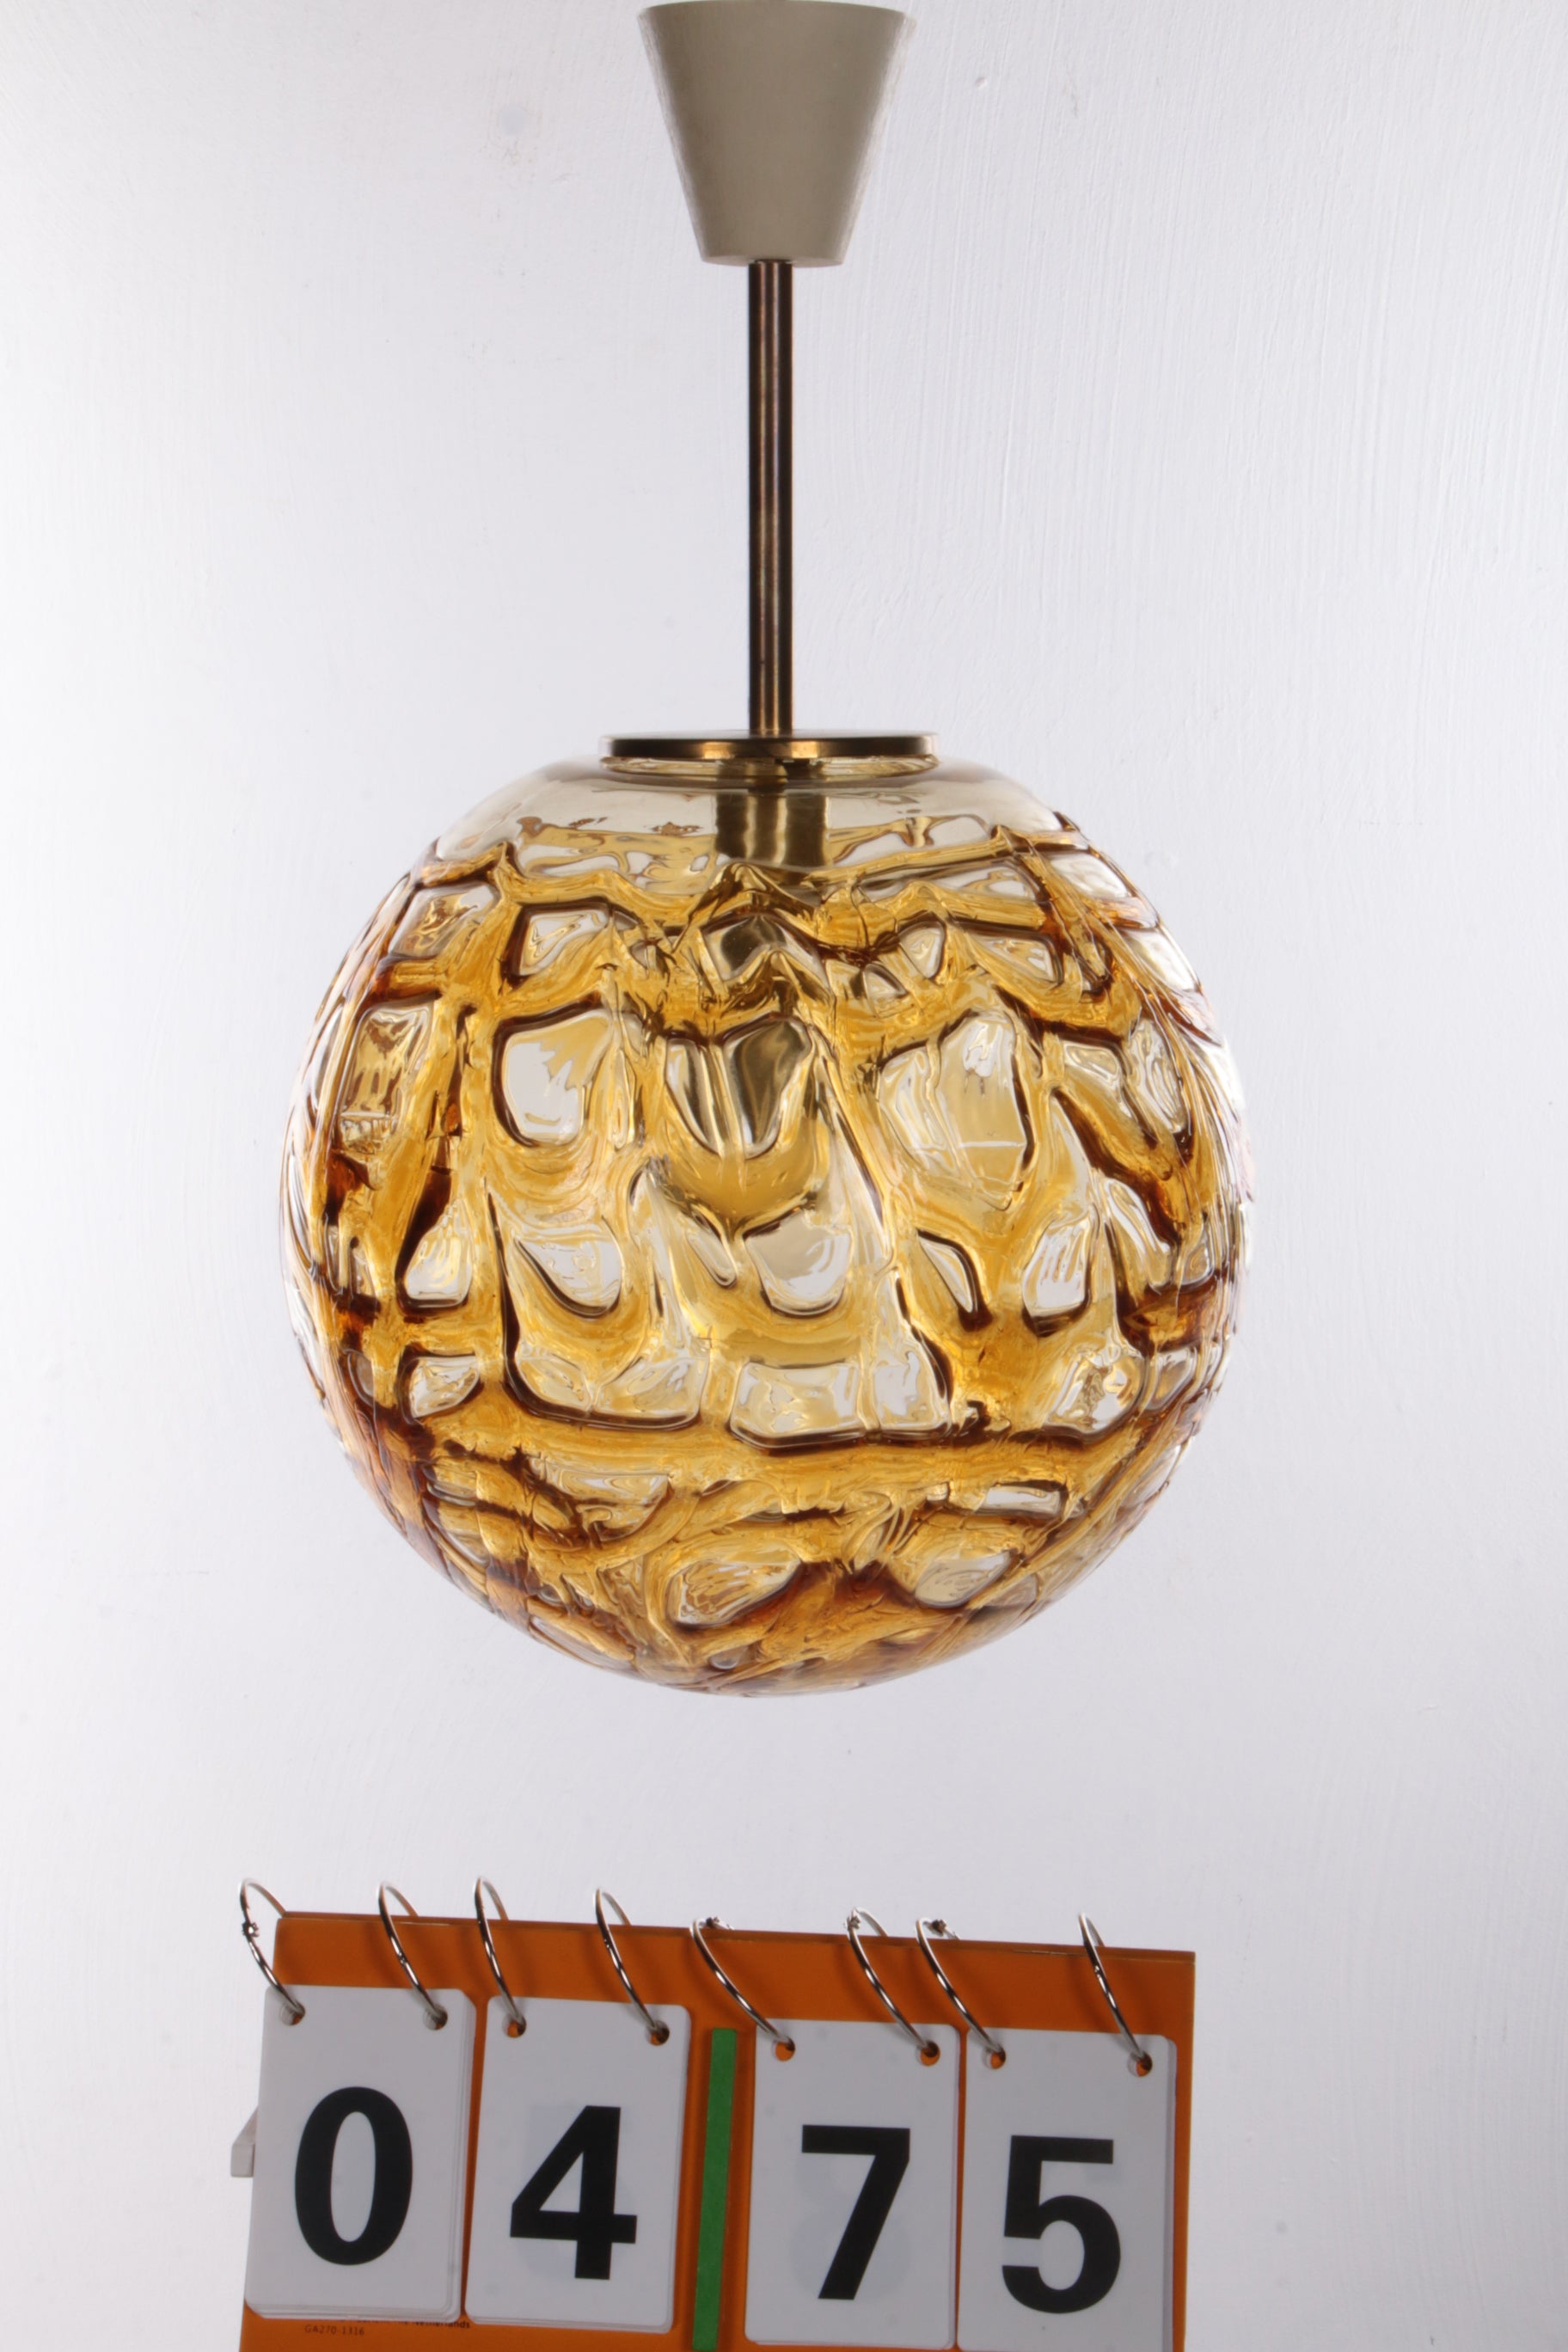 Grote Vintage Doria Murano glas Hanglamp gemaakt door Temde Leuchten,1960s